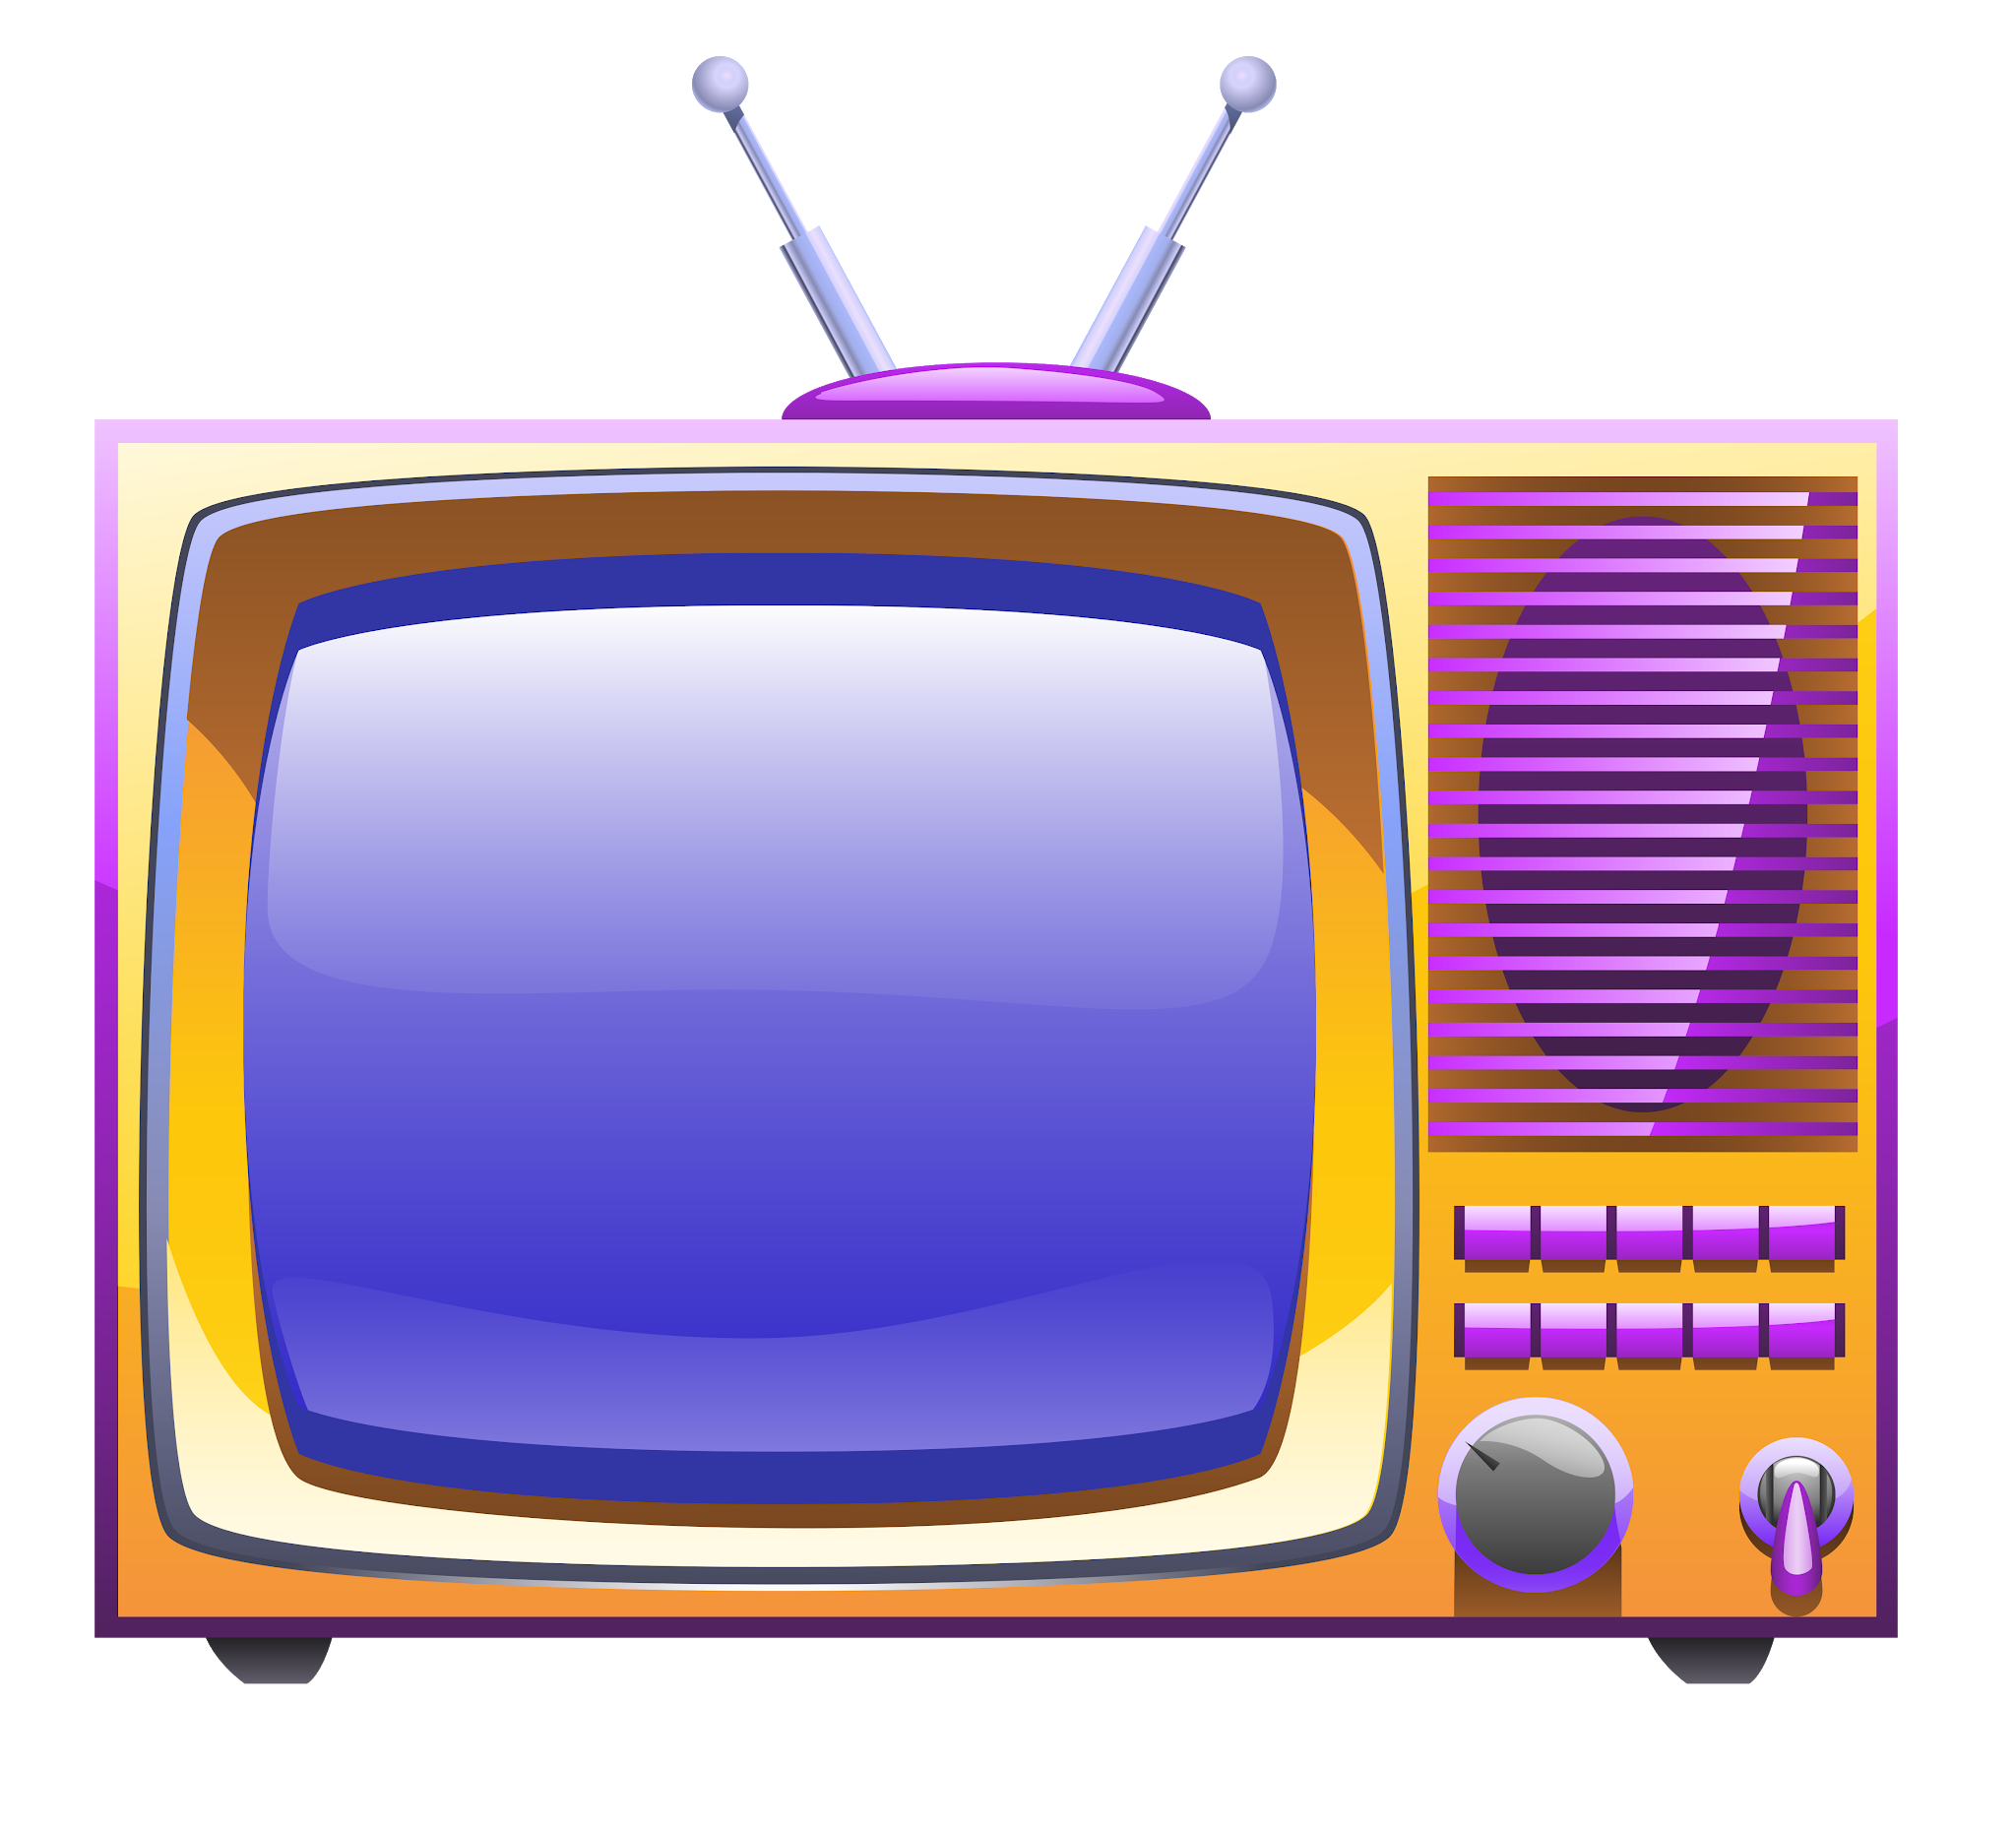 Watch tv set. Телевизор мультяшный. Телевизор для детей. Телевизор для презентации. Телевизор для дошкольников.